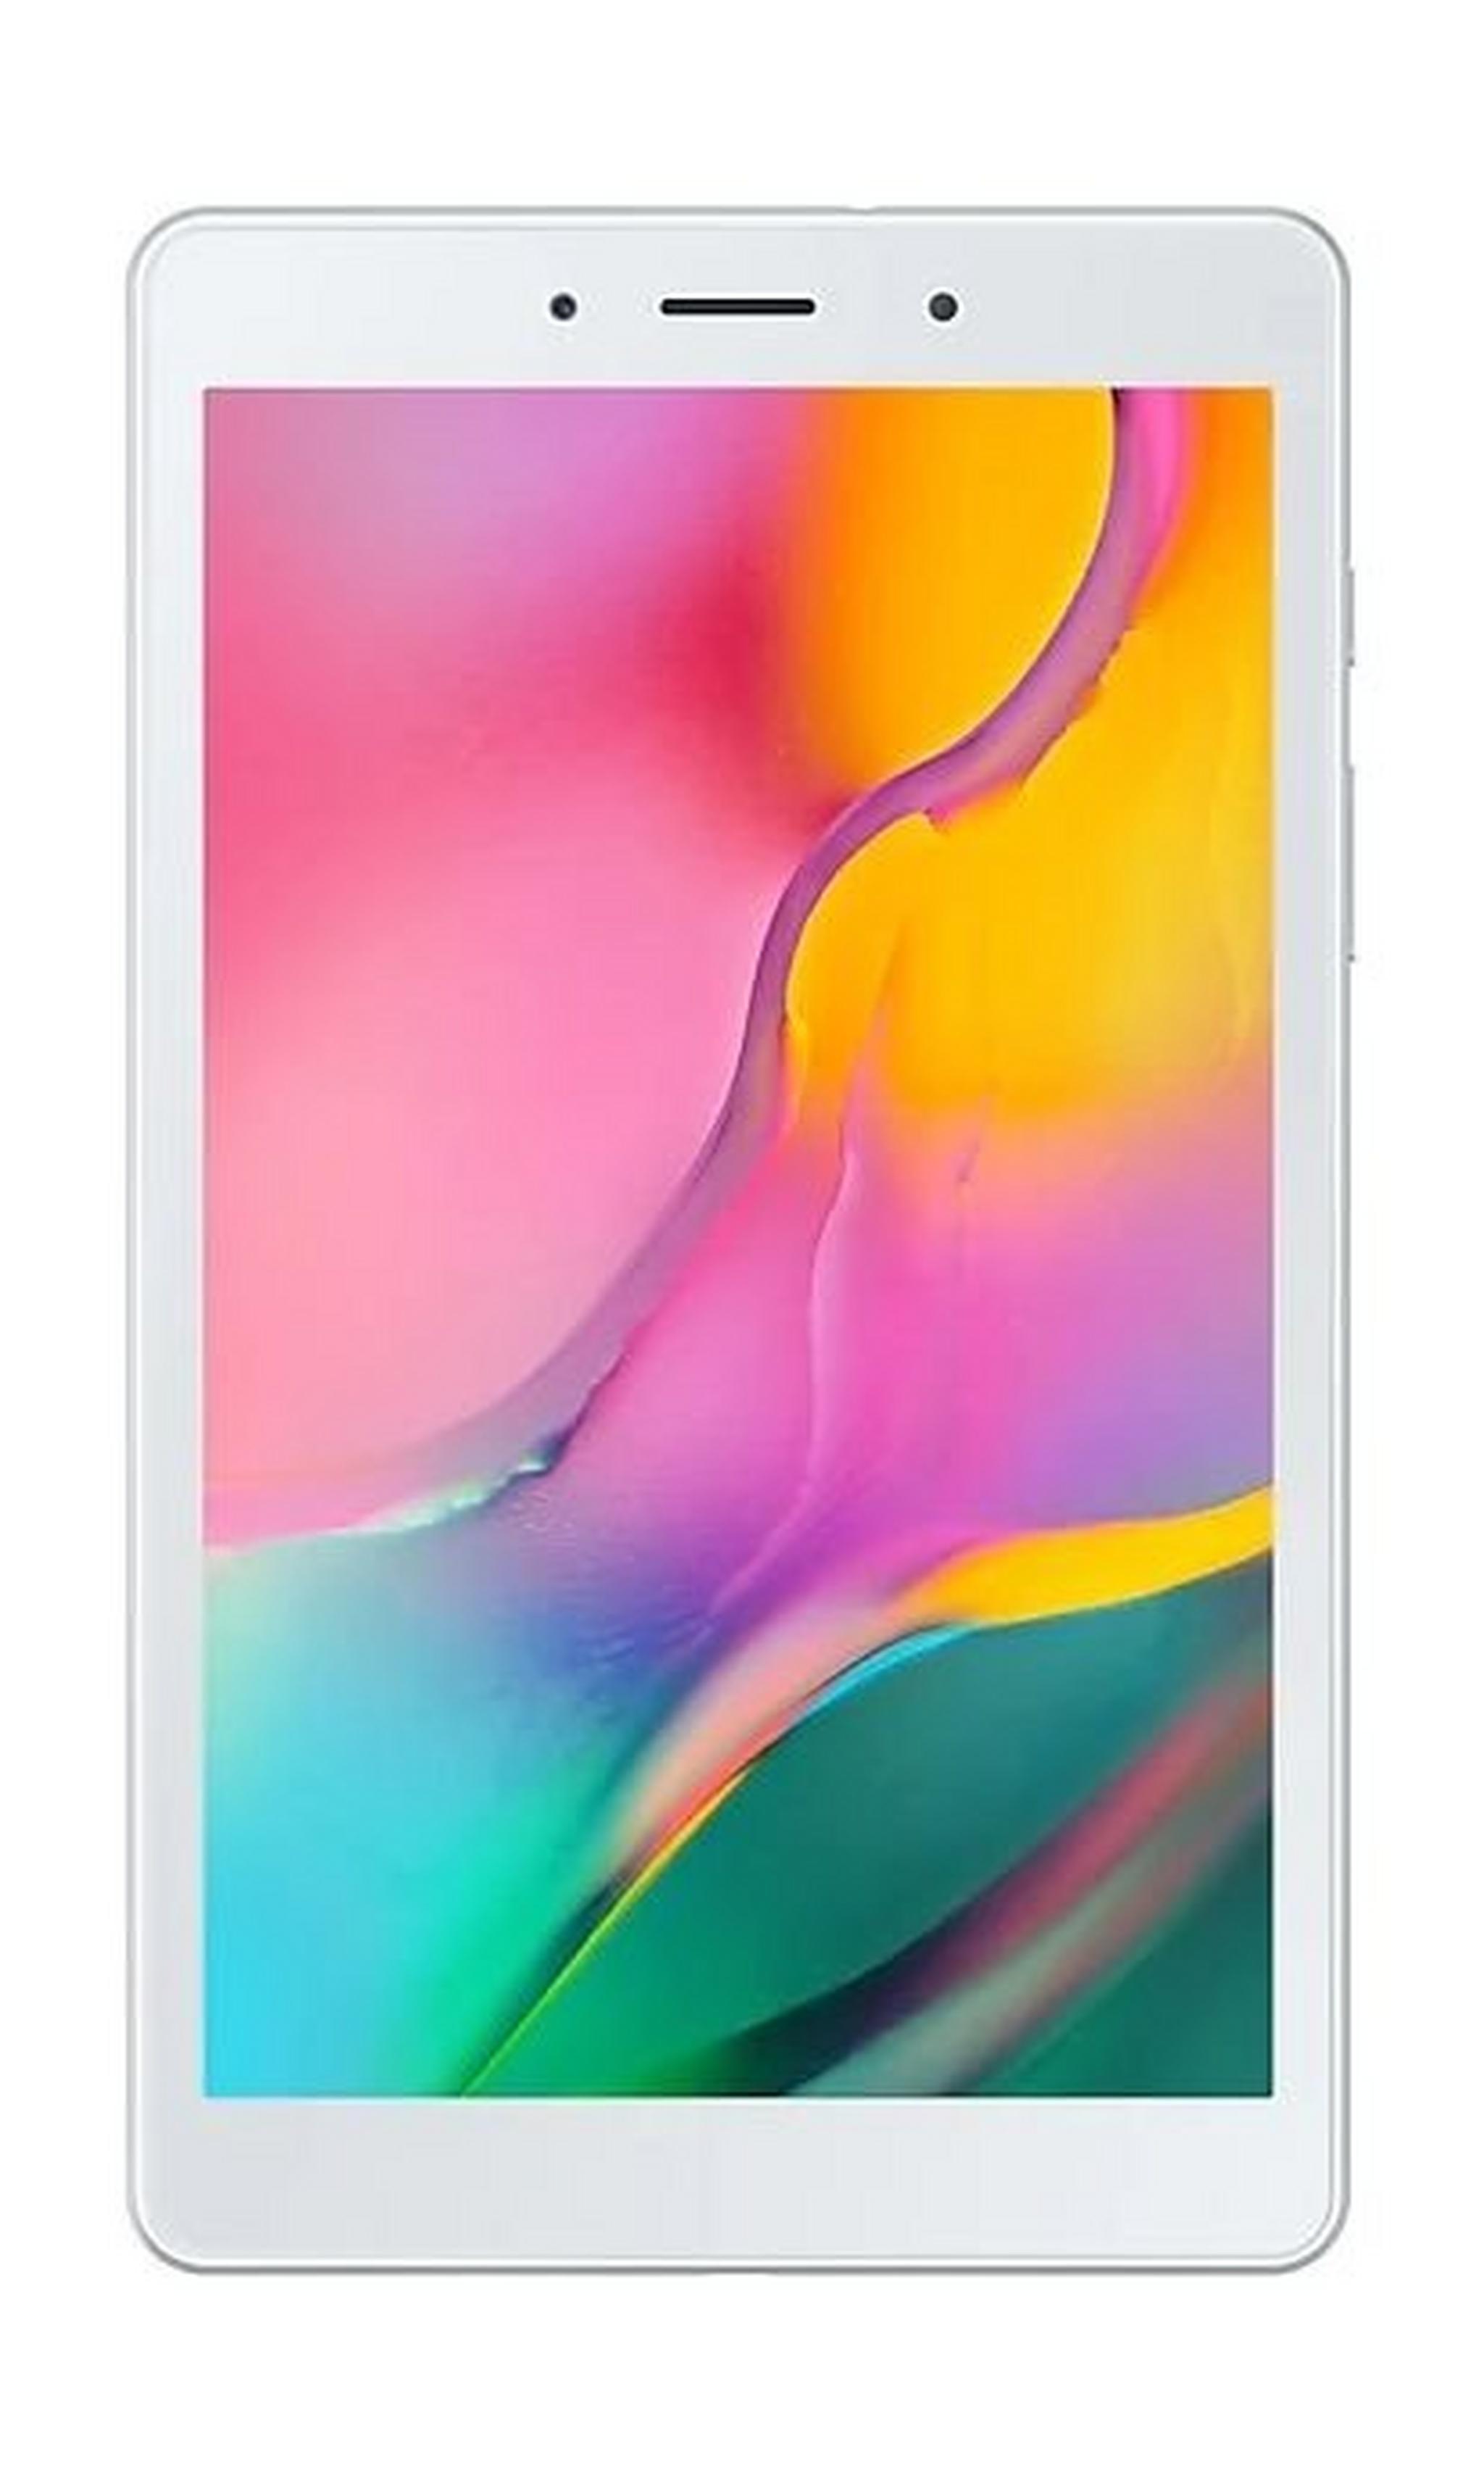 SAMSUNG Galaxy Tab A 2019 8-inch 32GB 4G LTE Tablet - Silver